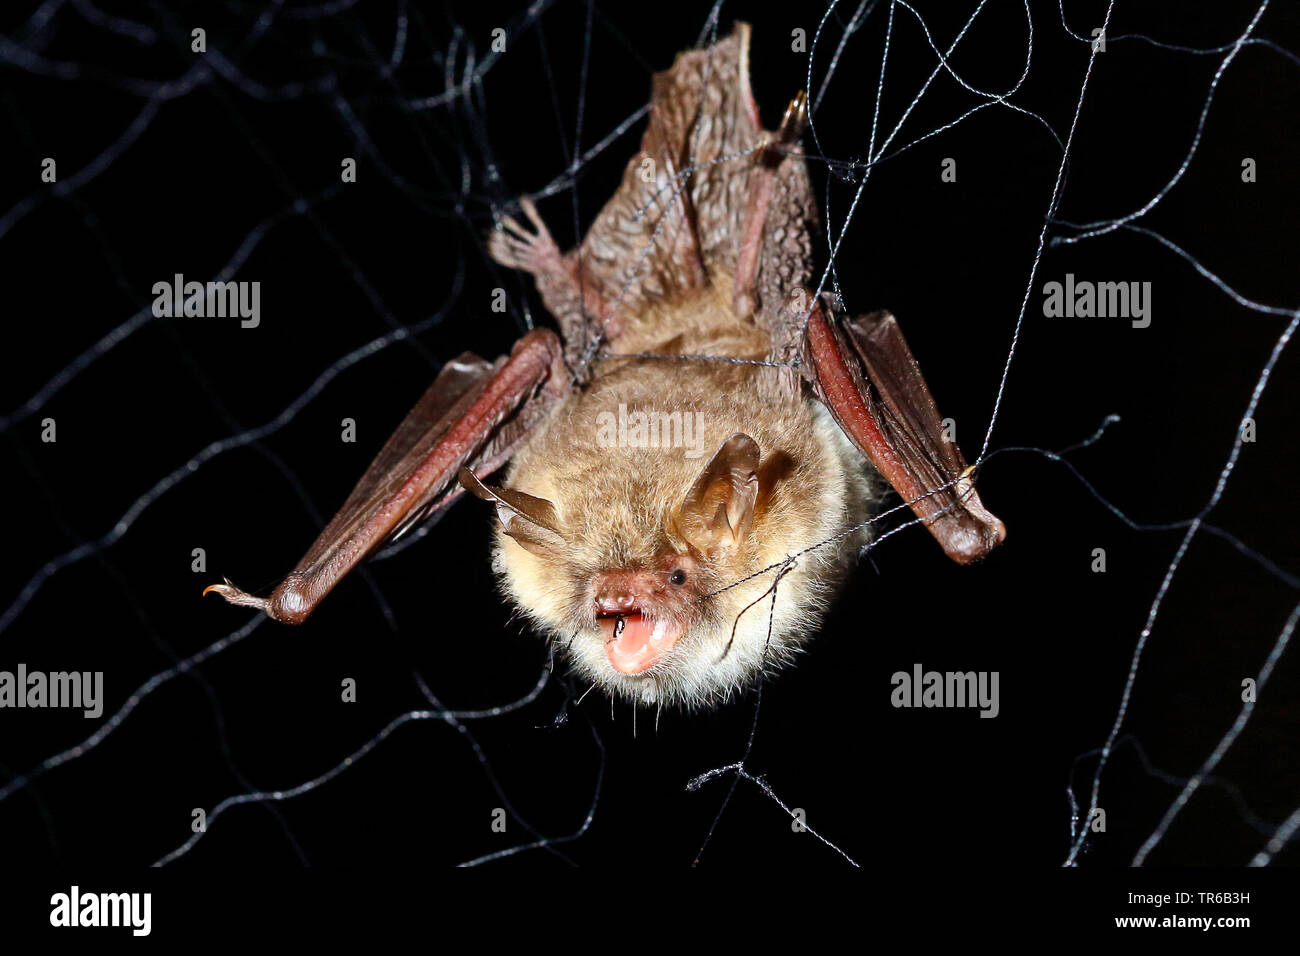 Natterer's bat (Myotis nattereri), caught in the bat net, Germany